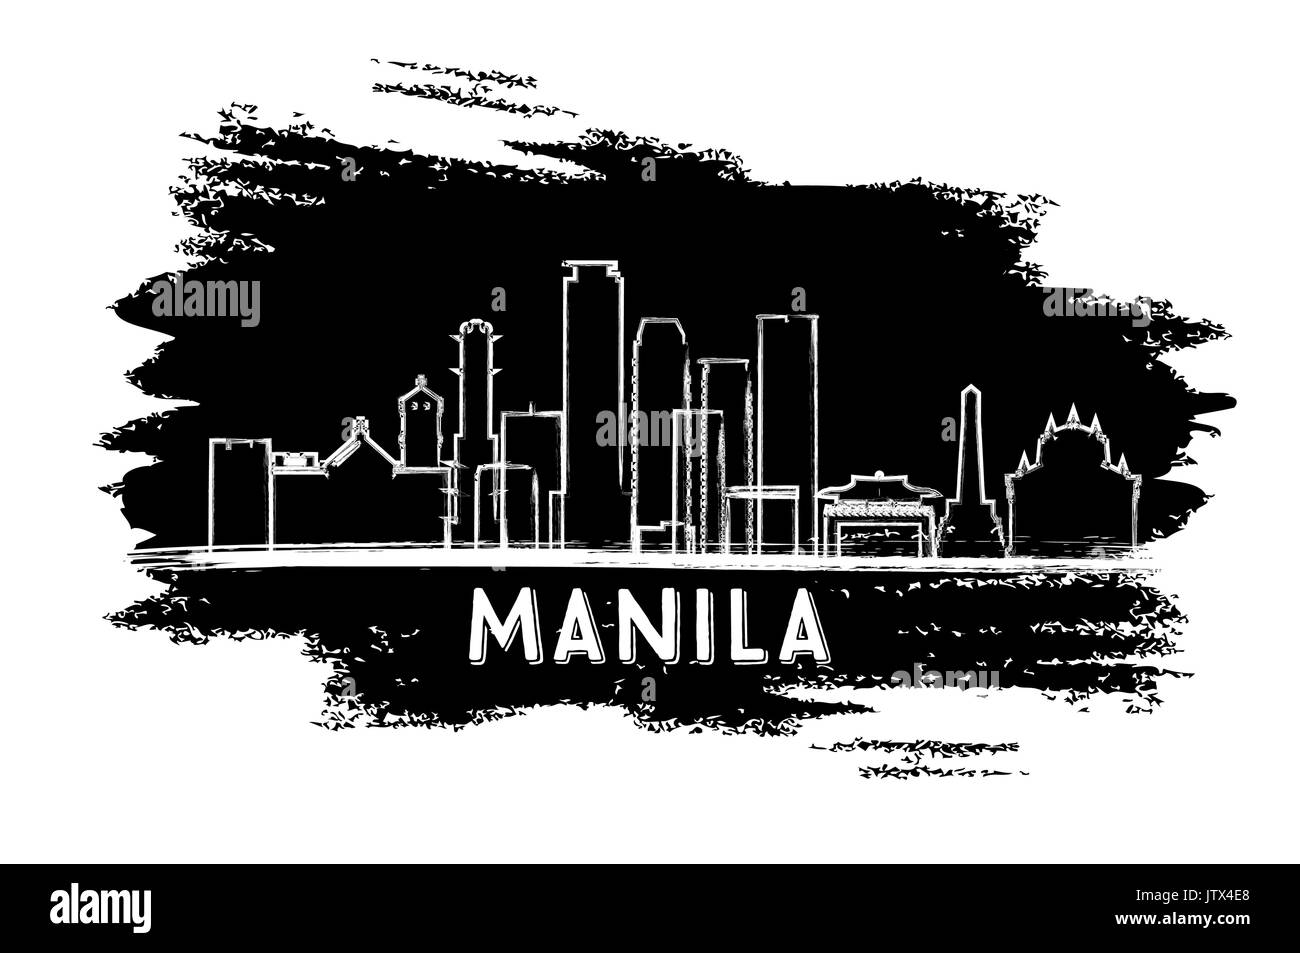 Manila Filippine skyline silhouette. mano bozzetto. illustrazione vettoriale. viaggi di affari e di turismo con il concetto di architettura moderna. Illustrazione Vettoriale